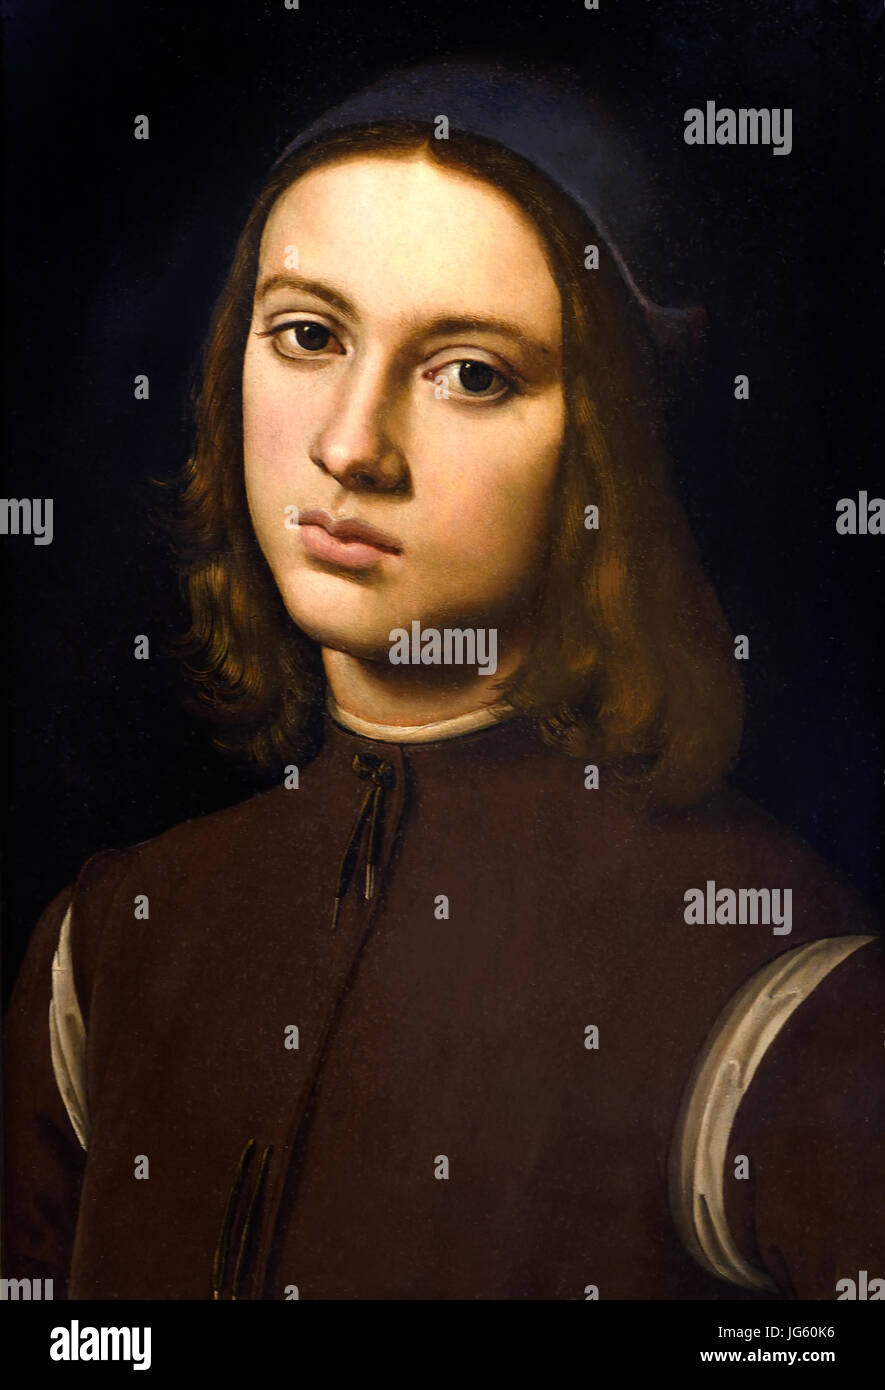 Ritratto di un giovane uomo 1494 Pietro Perugino 1446/1452 - 1523 nato Pietro Vannucci, Italiano pittore rinascimentale di scuola umbra, Italia . Foto Stock